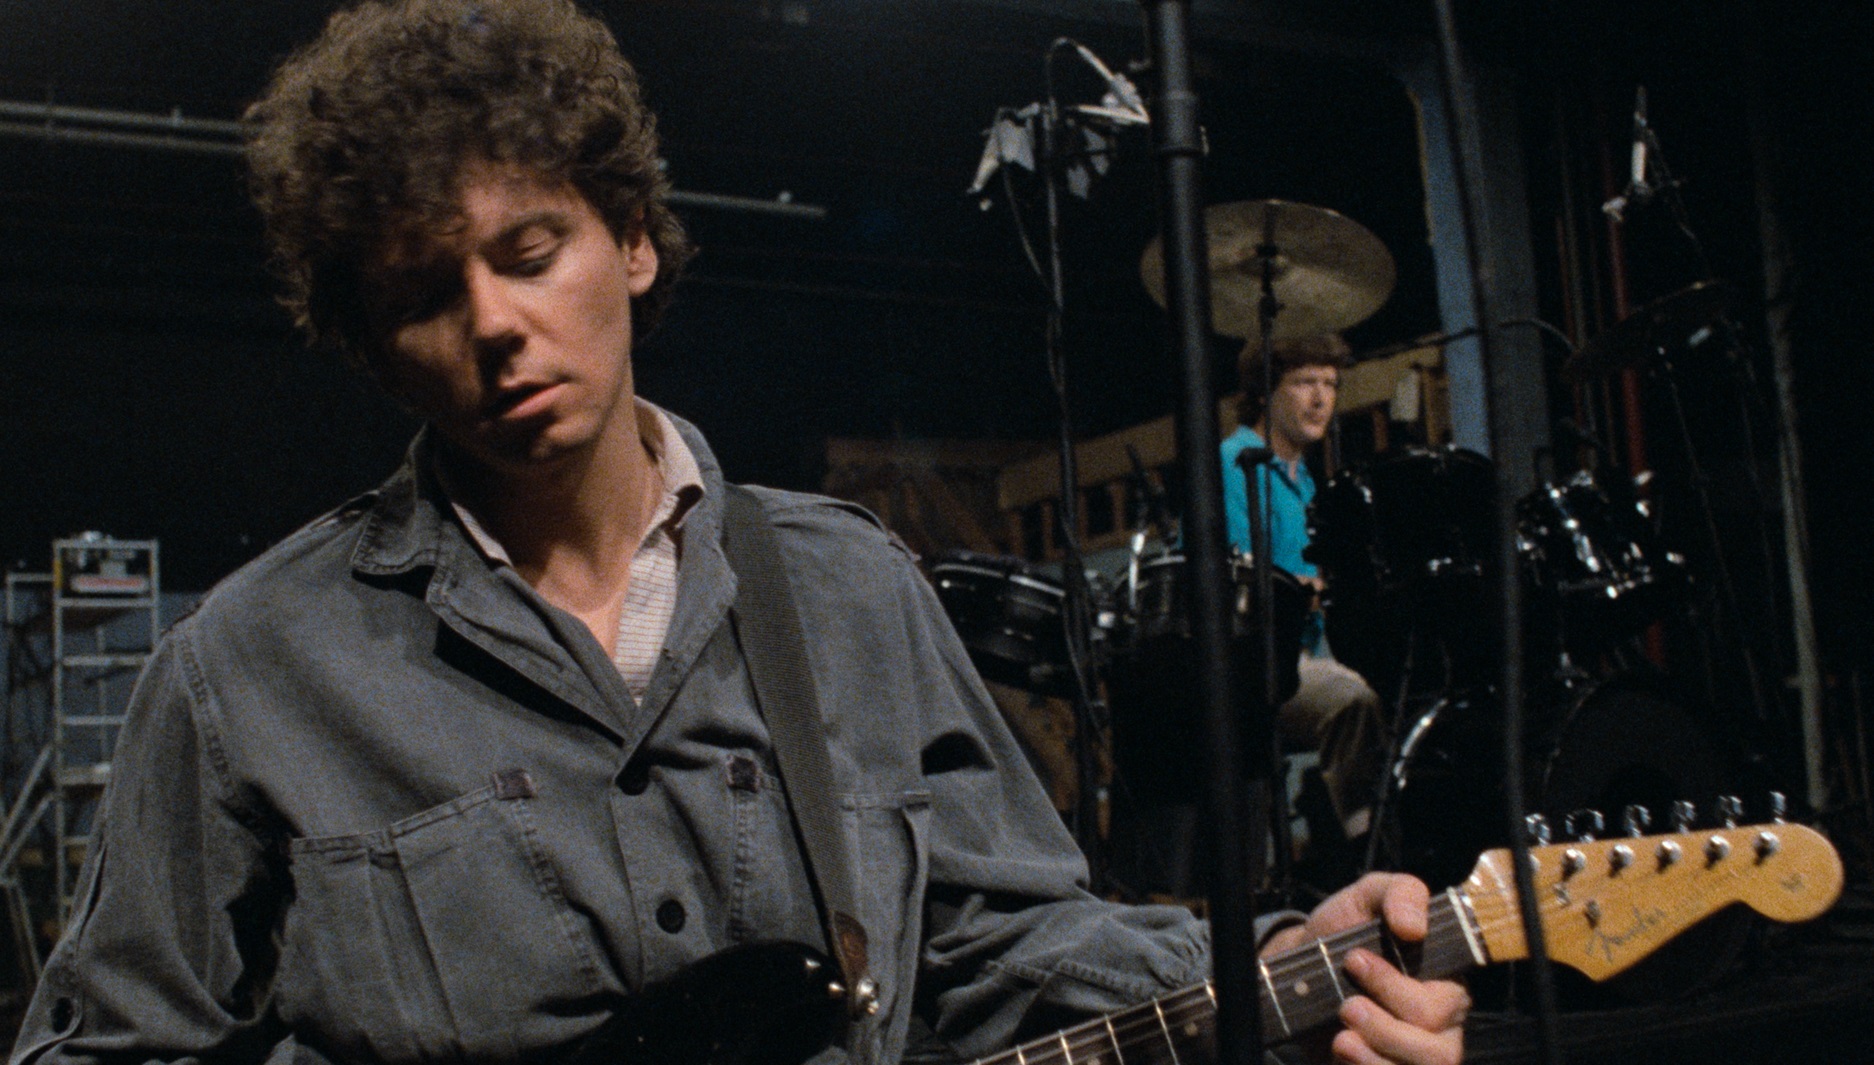 Gitarist van de band Talking Heads tijdens hun concert in 1983